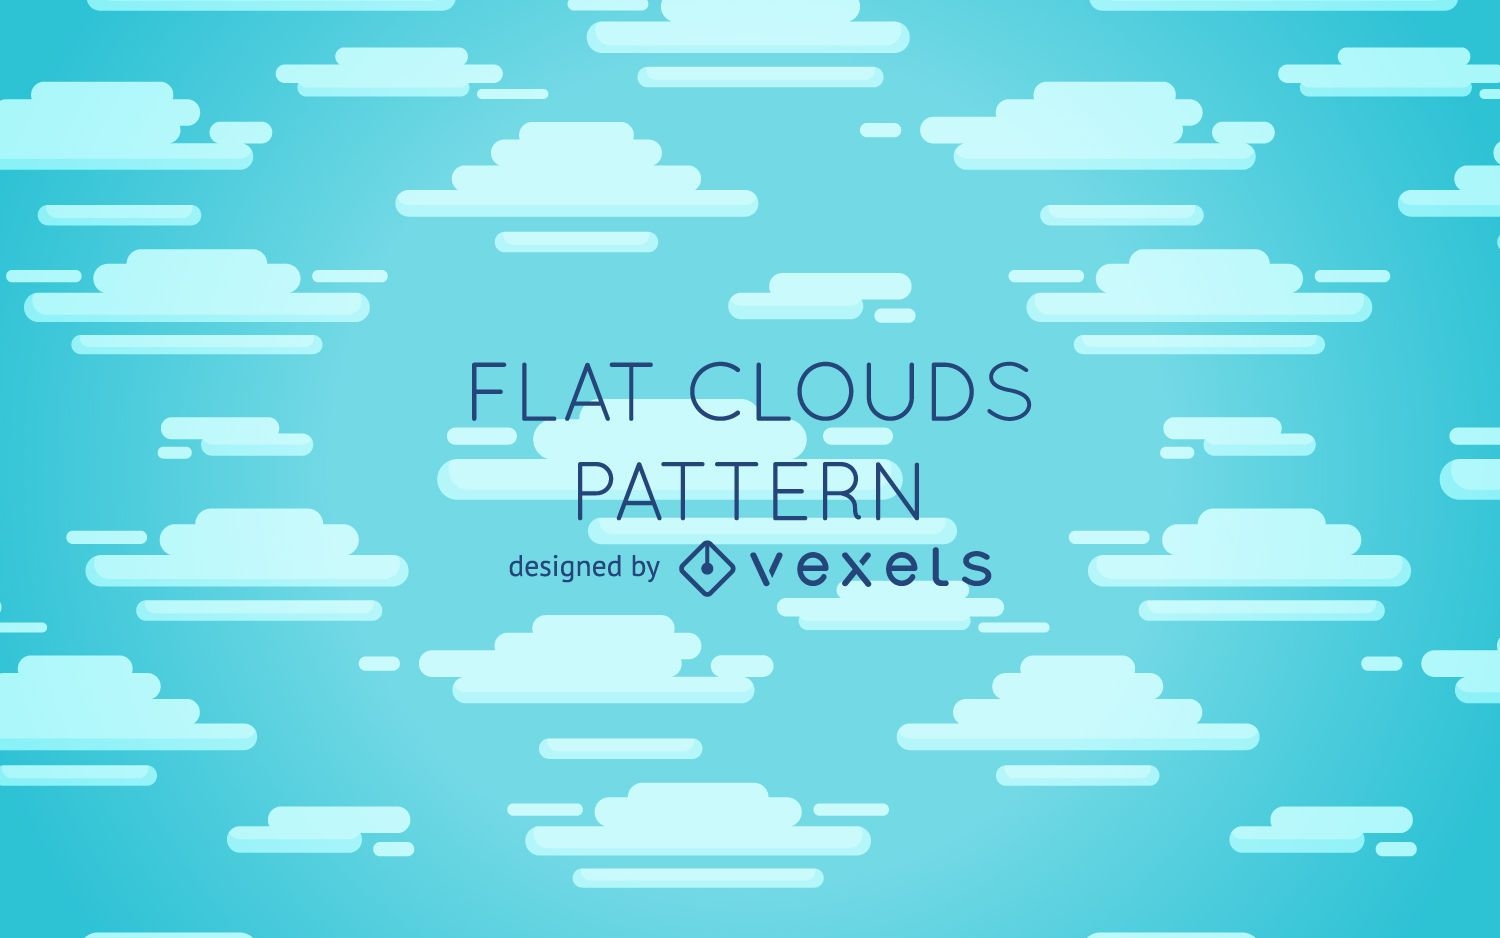 Flat clouds pattern design